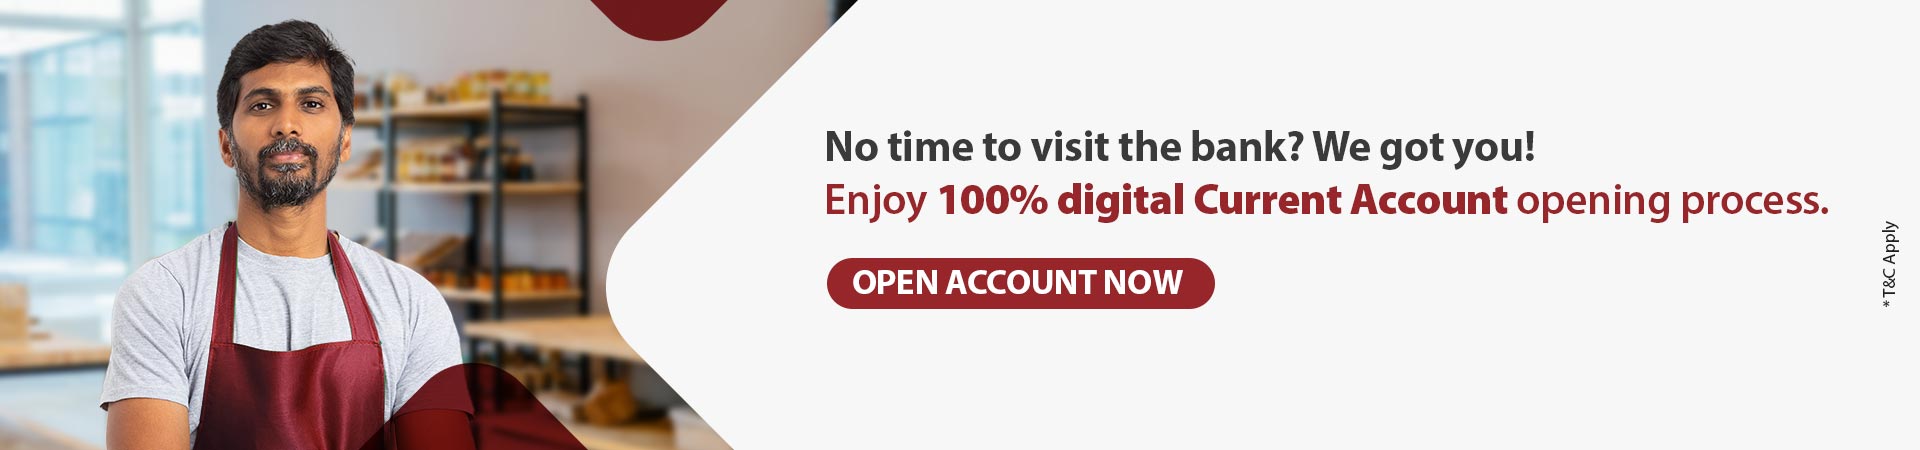 digital current account open online